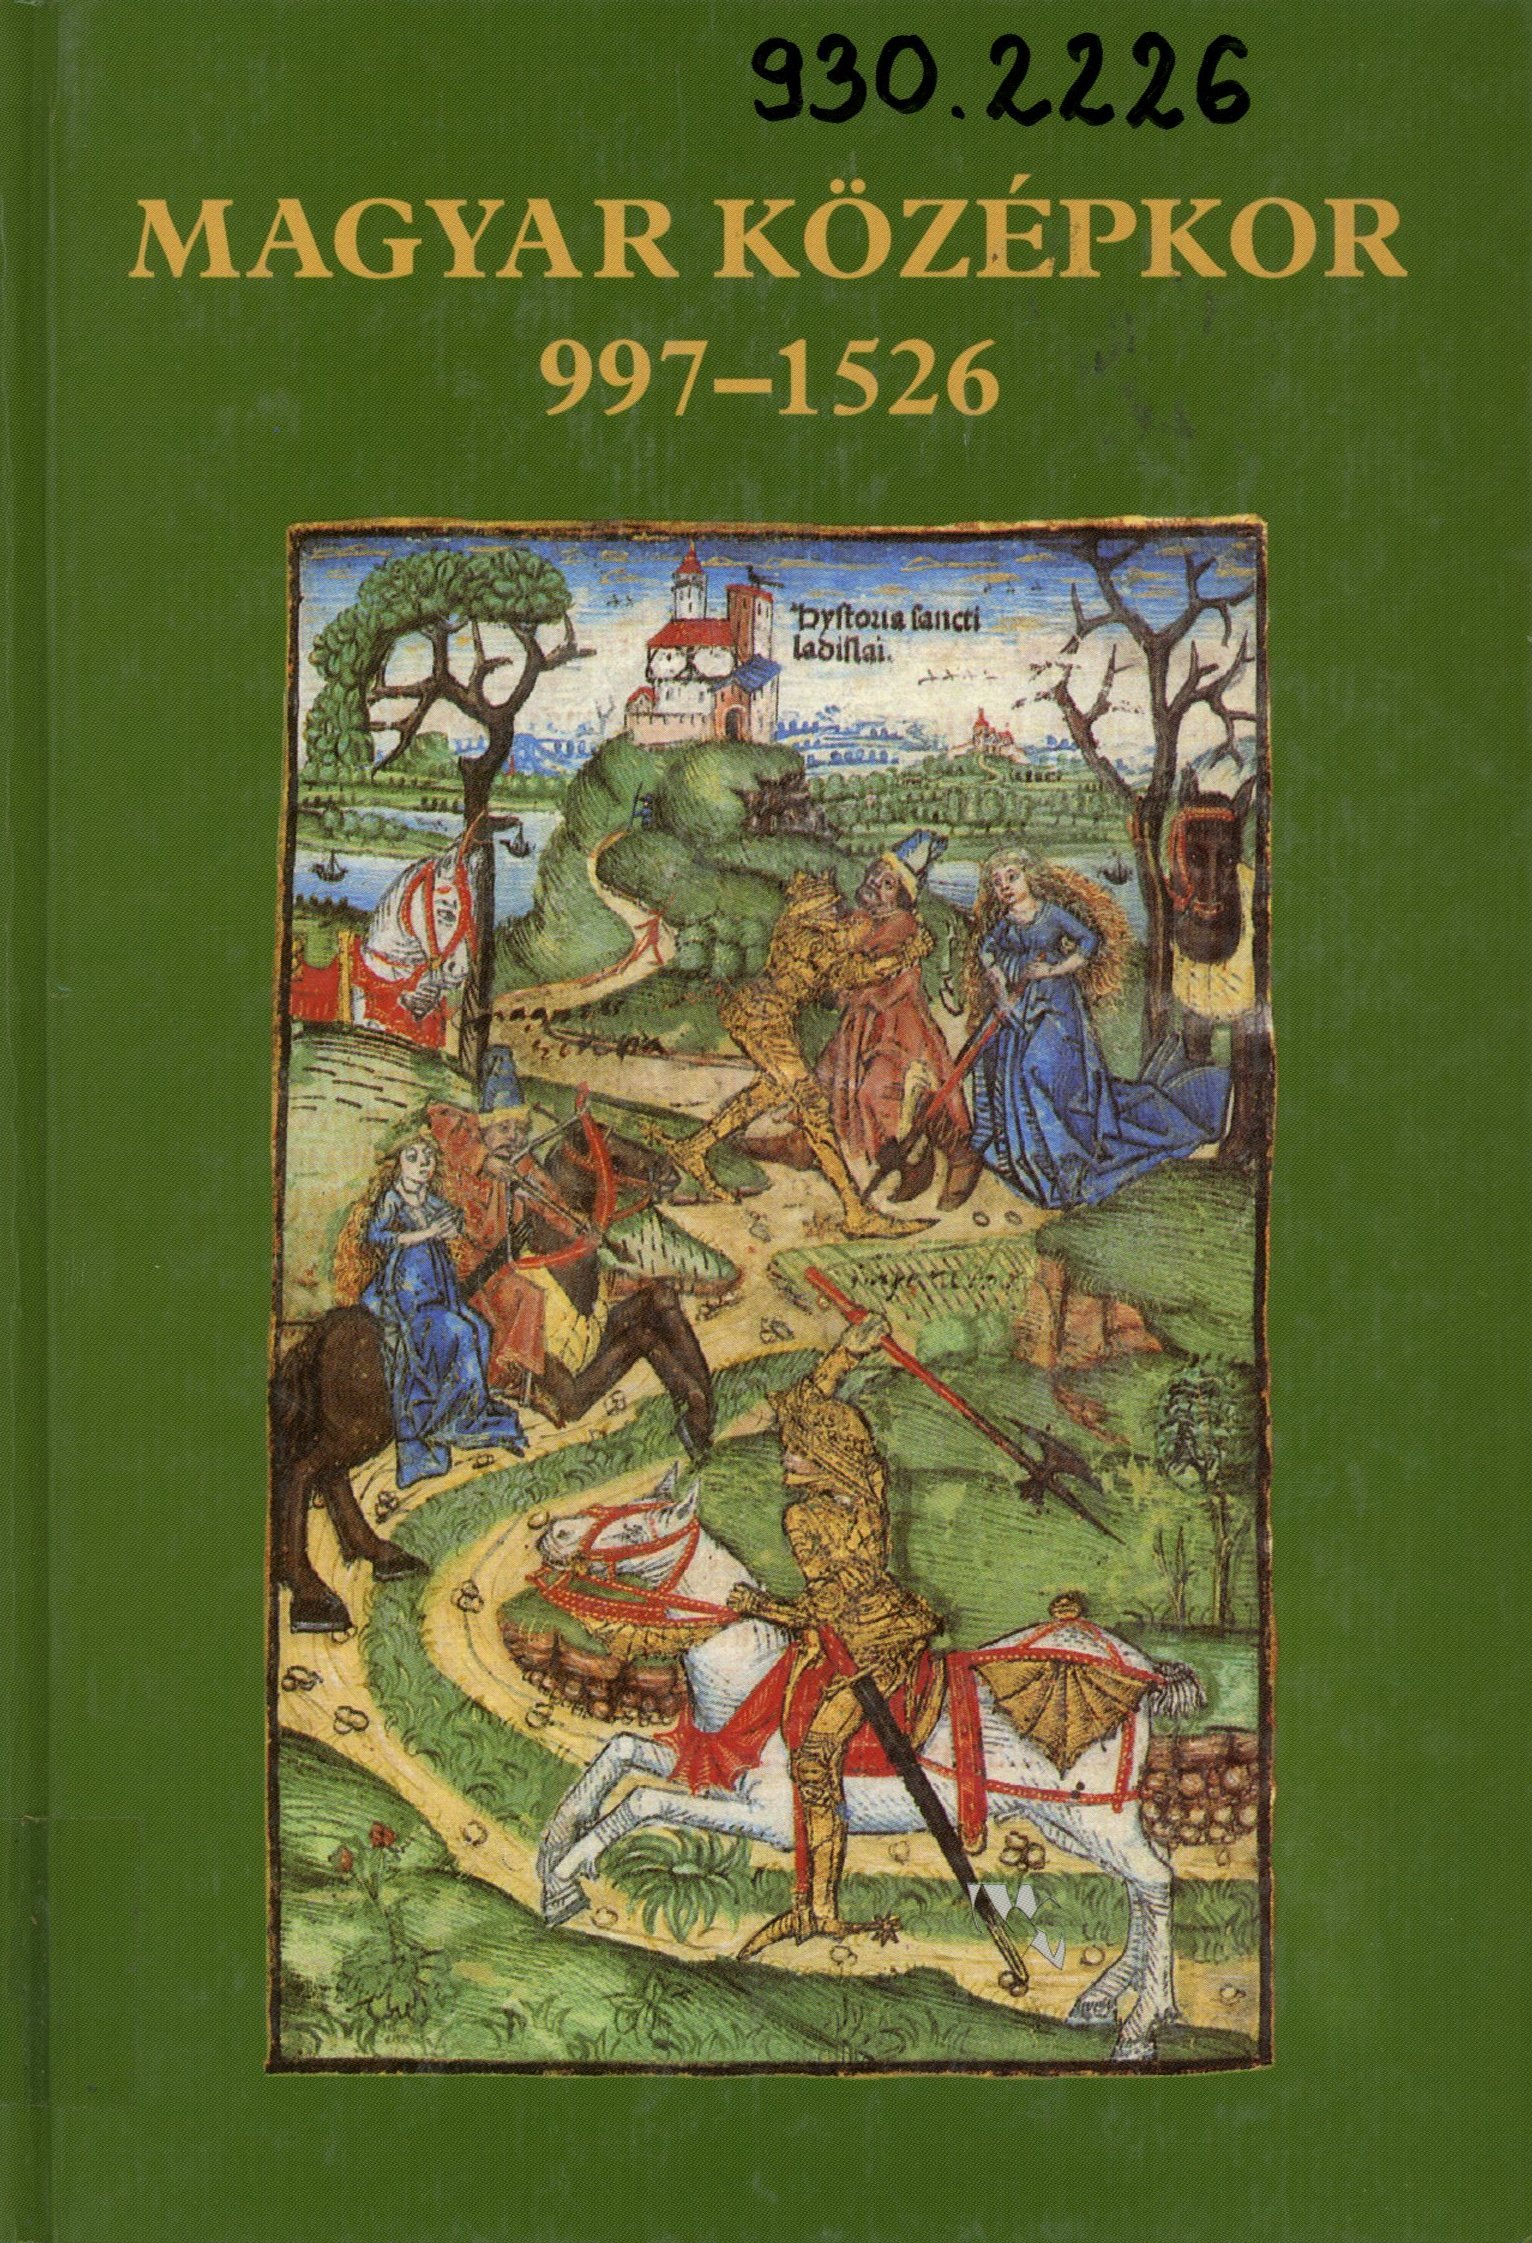 Magyar Középkor 997 - 1526 (Erkel Ferenc Múzeum és Könyvtár, Gyula CC BY-NC-SA)